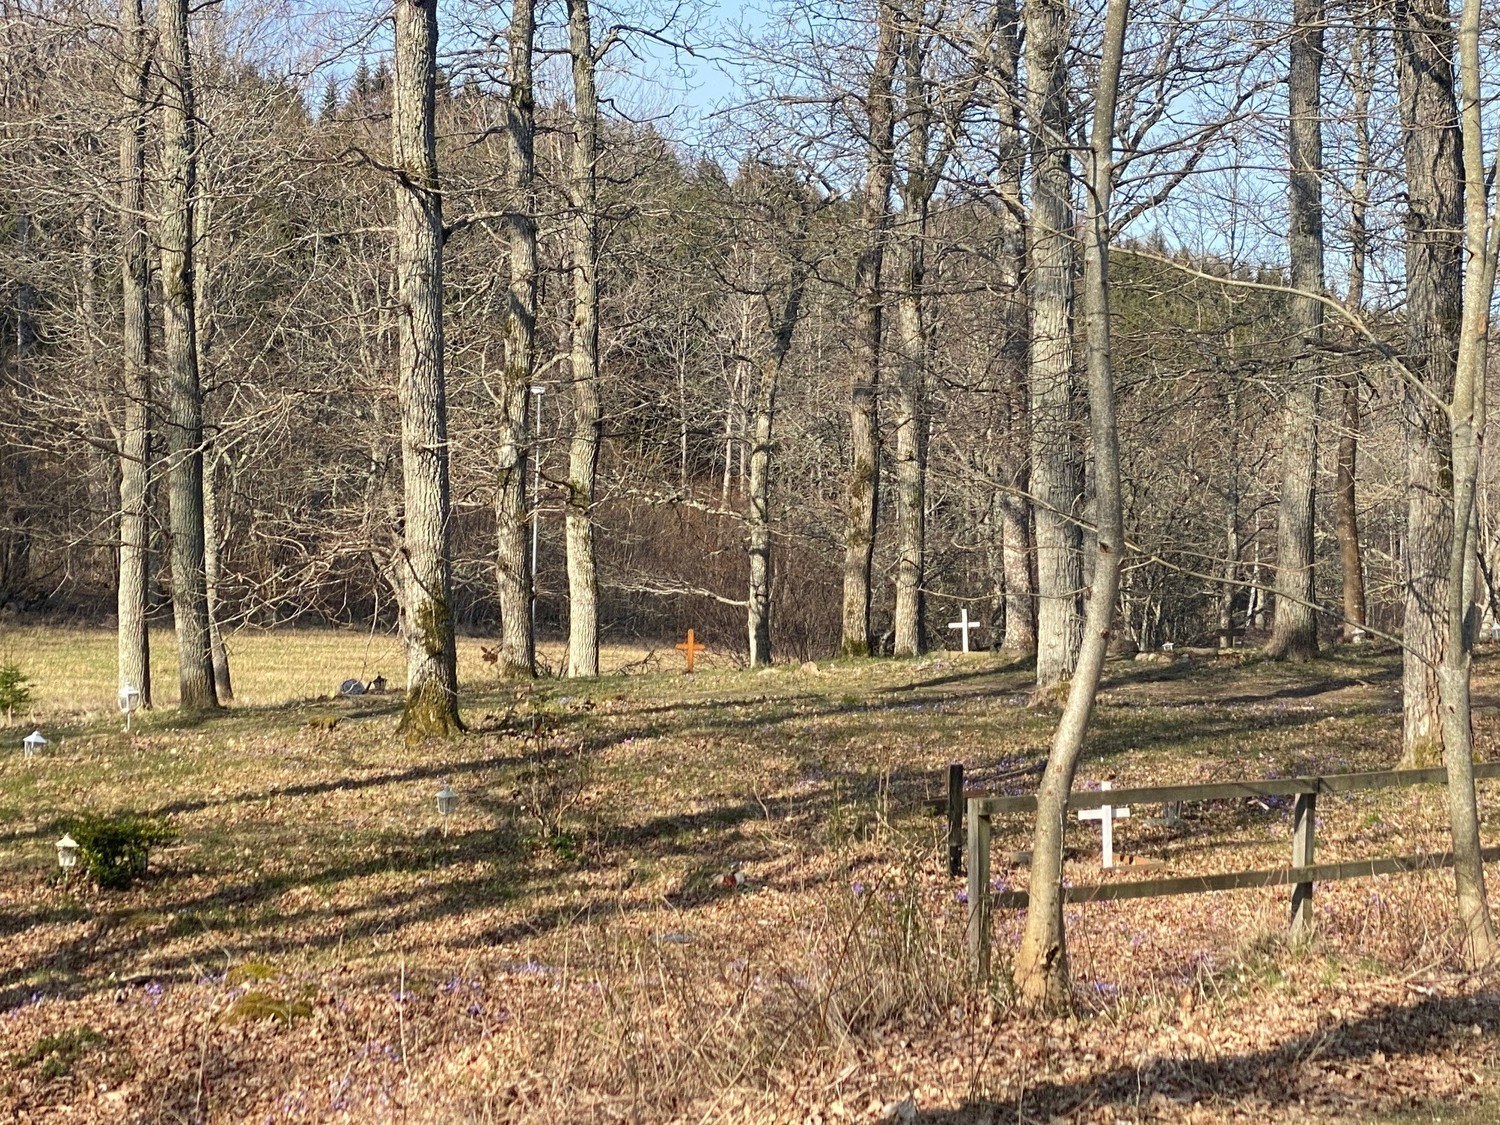 Djurkyrkogård i skog. Små kors är utspridda mellan träden.